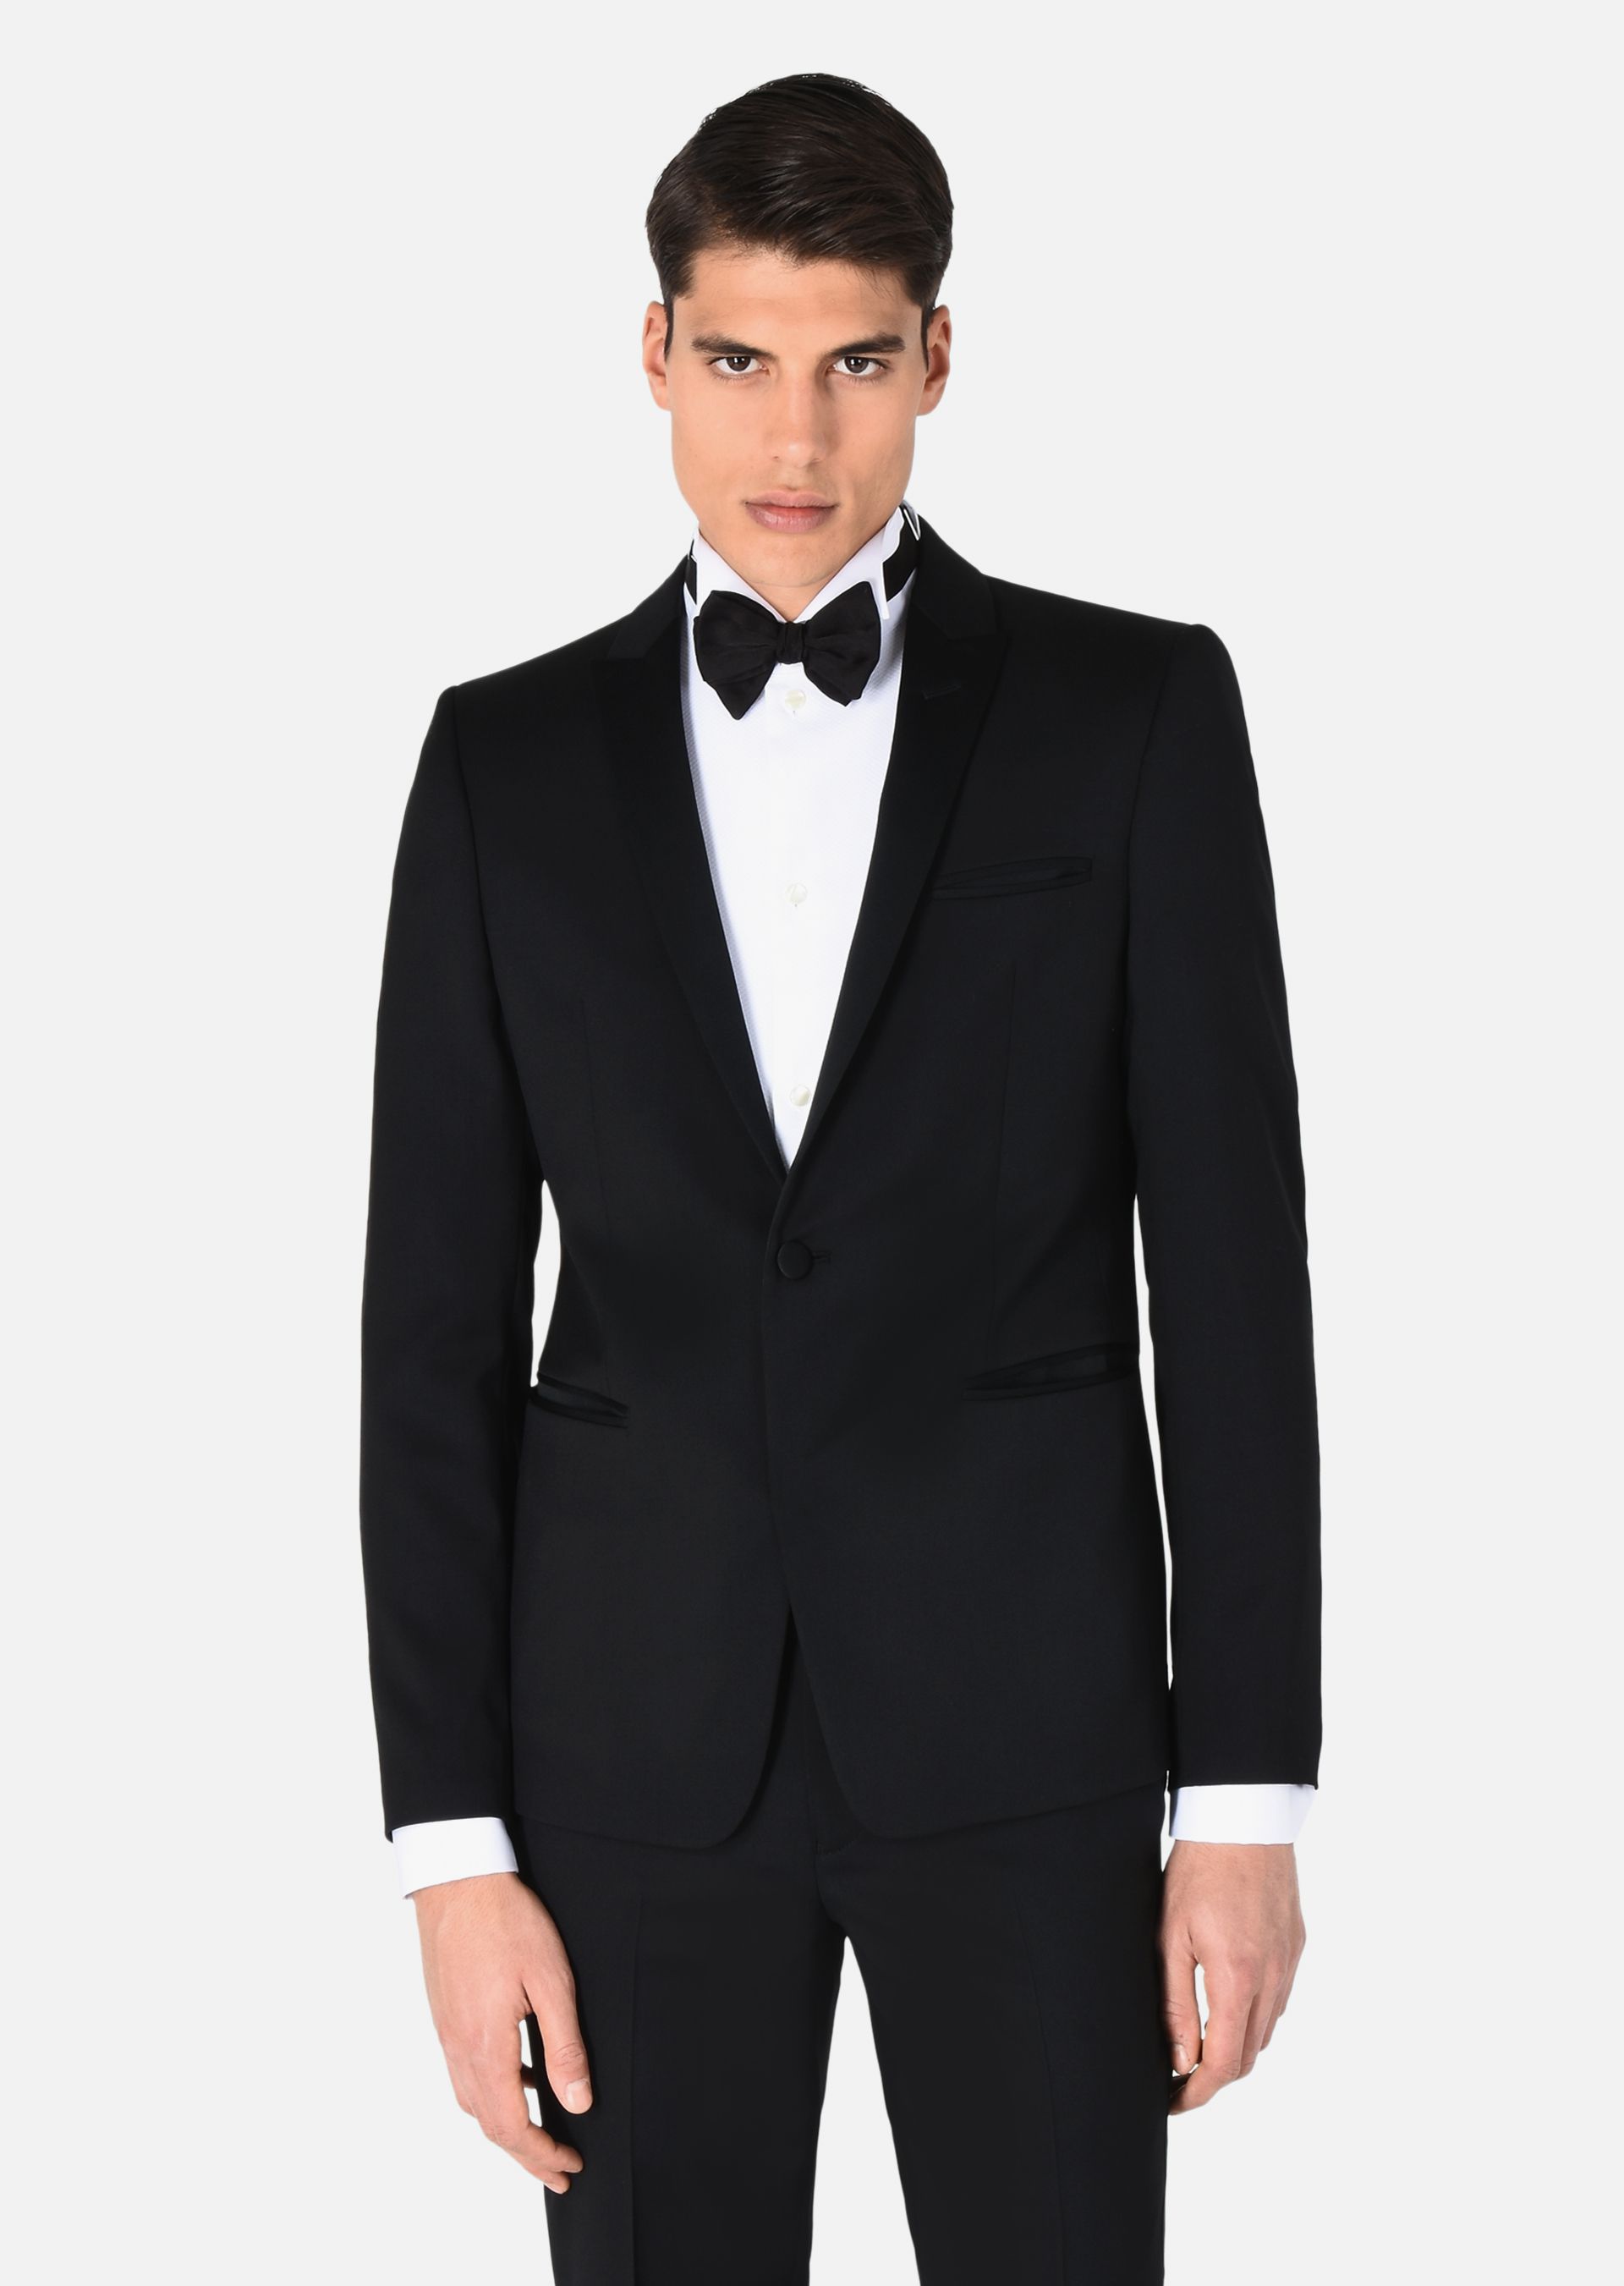 Does Armani Tuxedo Have a Warranty? – RobertGeller-ny